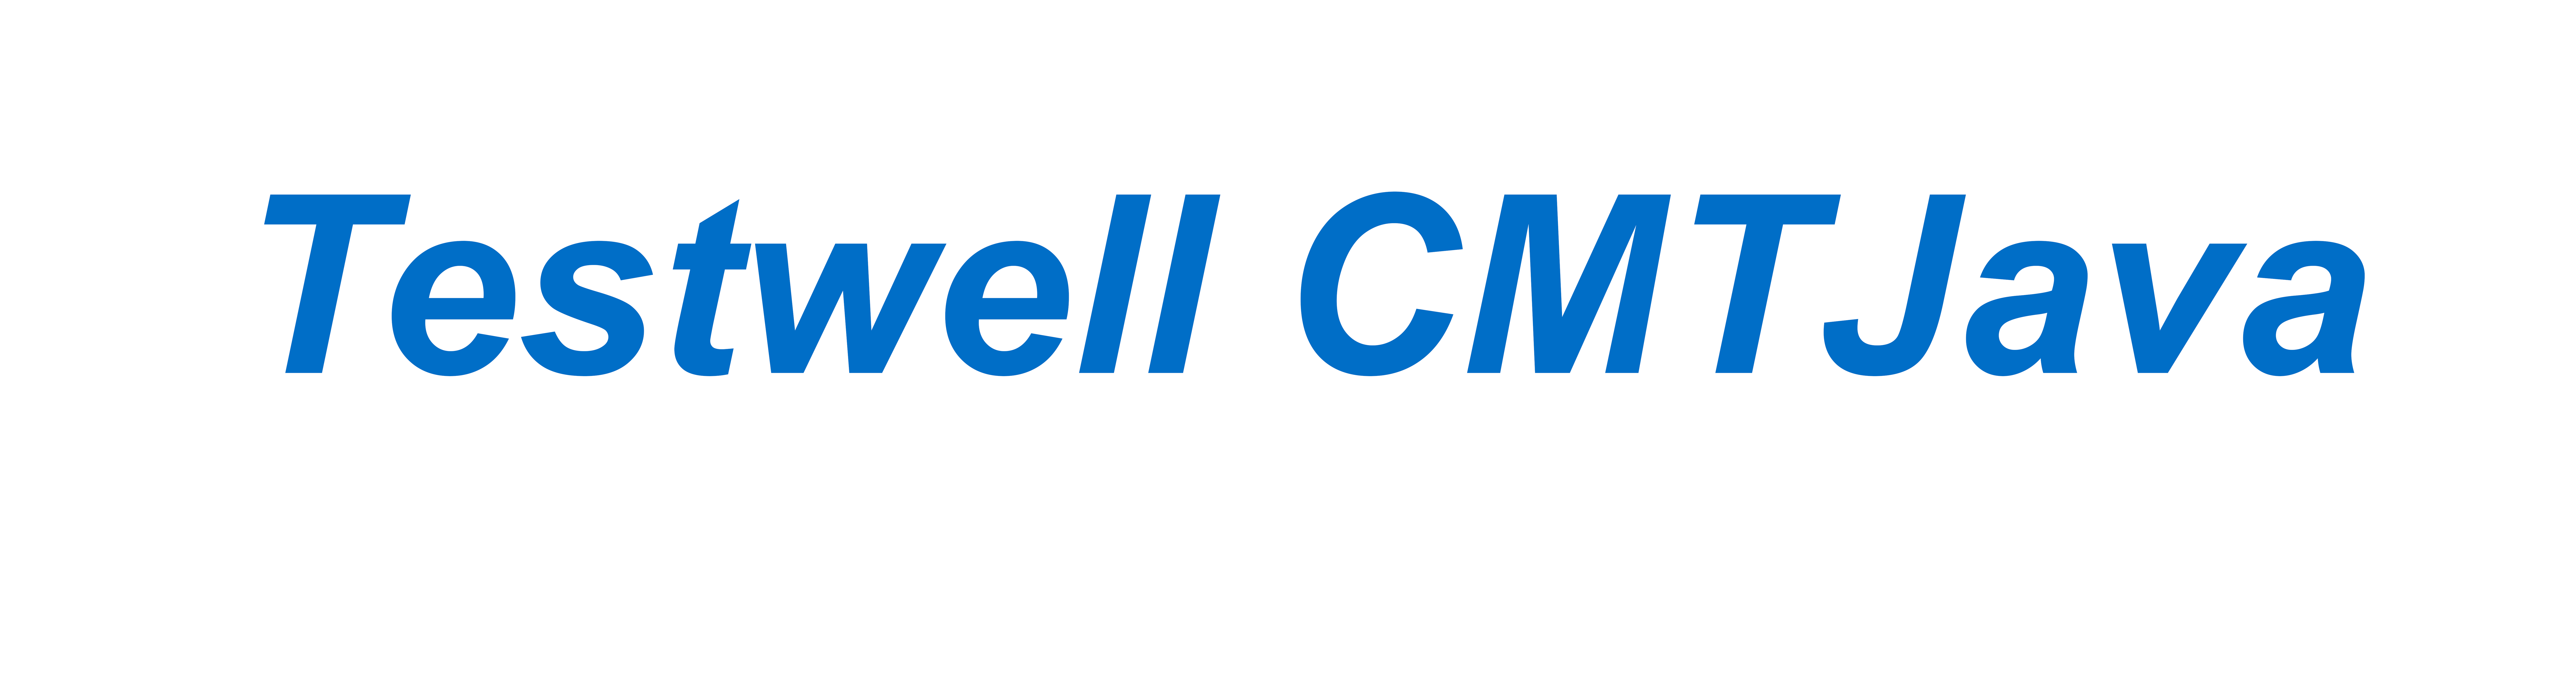 Testwell CMTJava Logo